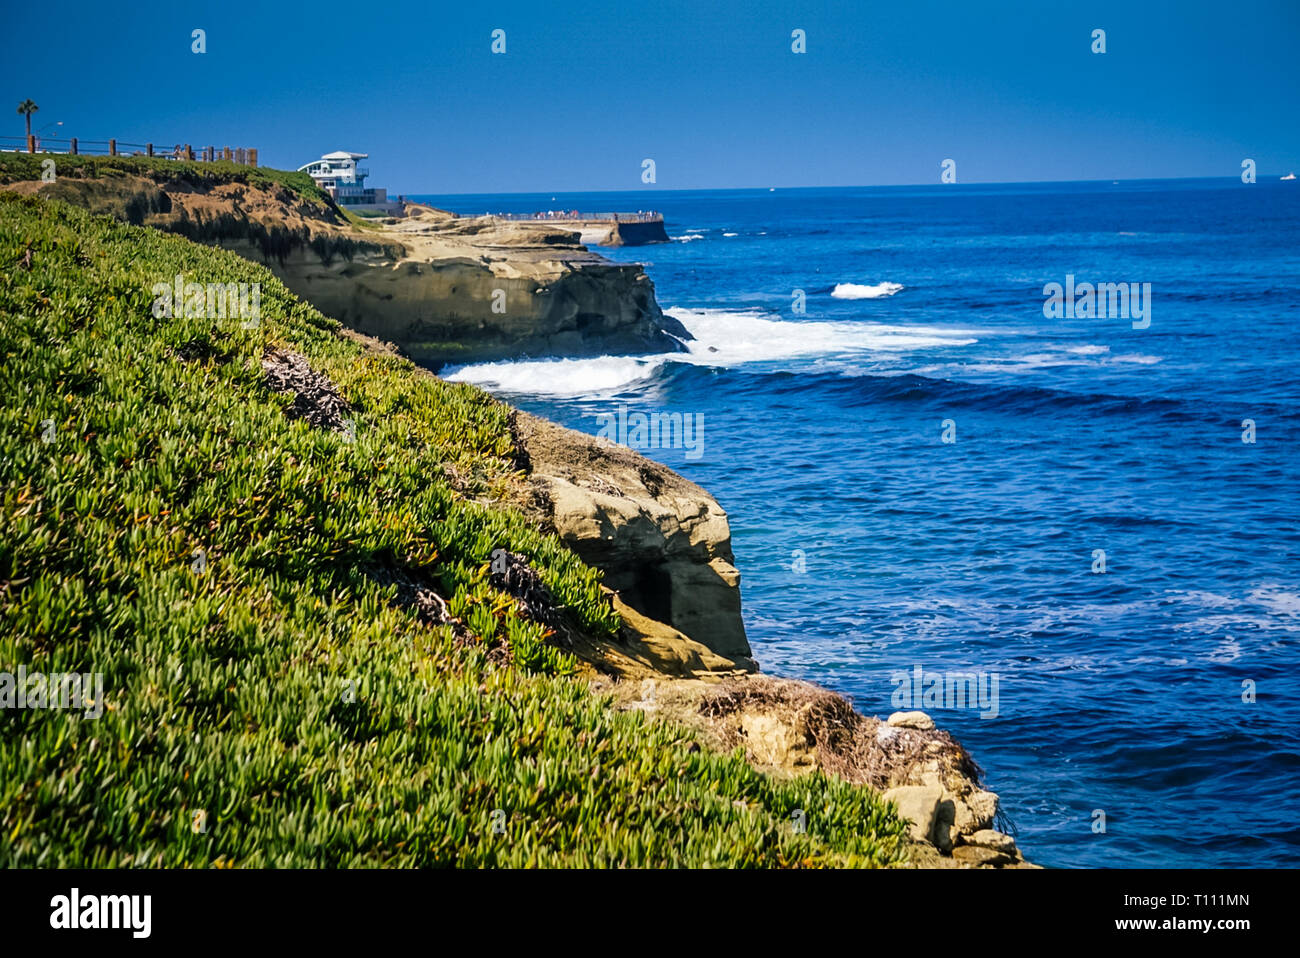 Una vista de los acantilados de La Jolla Cove y el Pacific Coast Highway, cerca de San Diego, California Foto de stock